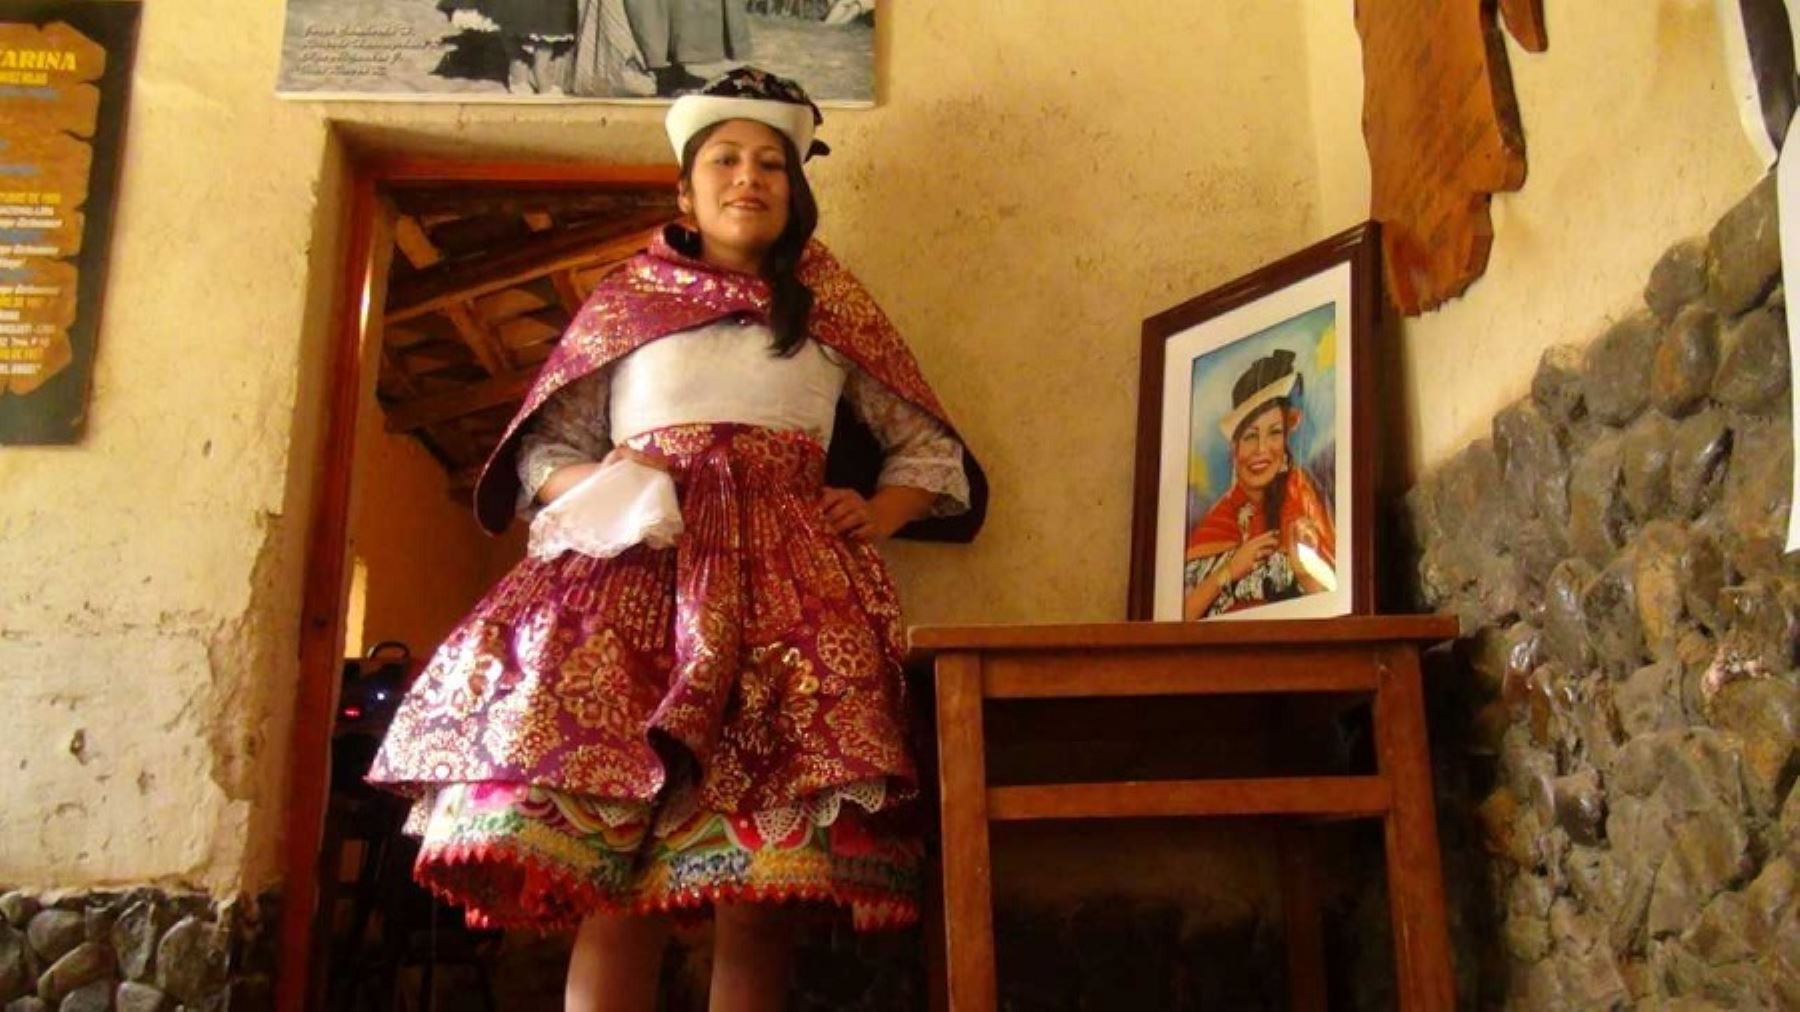 A 30 años del fallecimiento de Leonor Chávez Rojas, conocida en el mundo artístico como “Flor Pucarina” o la “Faraona del cantar huanca”, su recuerdo se mantiene vivo gracias a su inagotable repertorio musical. Por ello, más de treinta artistas jóvenes e intérpretes folclóricos, cantarán sus mejores éxitos que enaltecieron al folclor peruano a escala mundial.